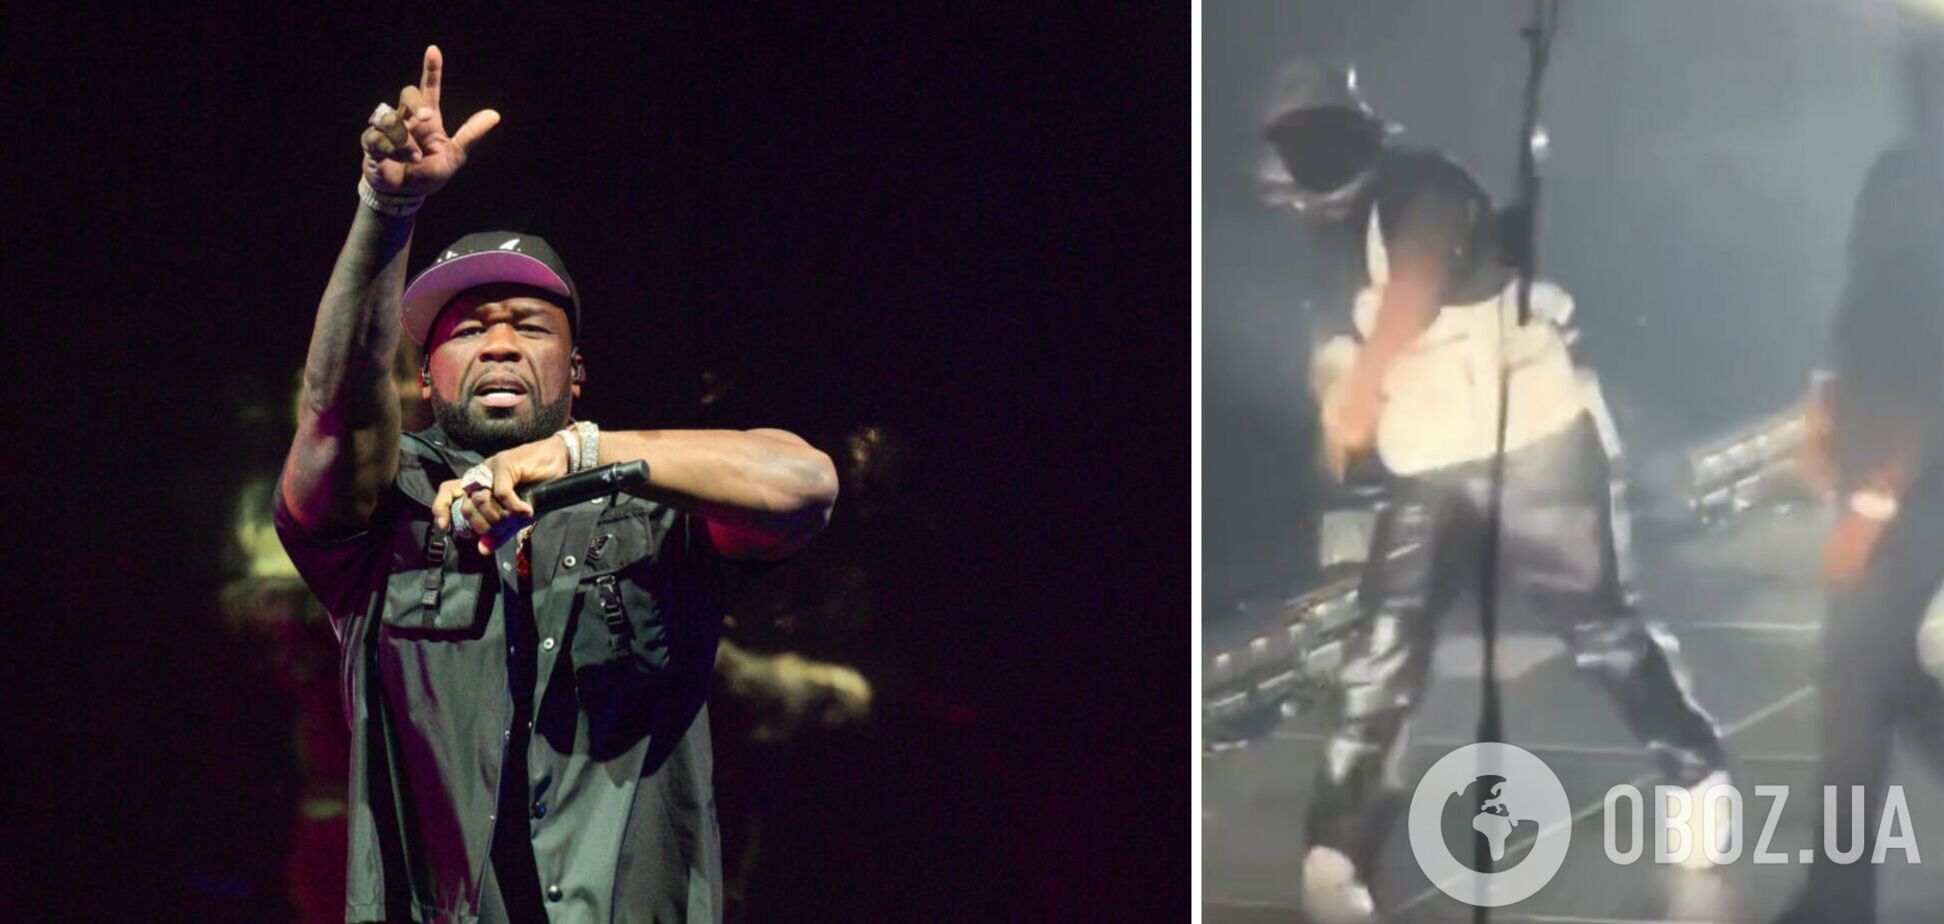 Рэпер 50 Cent на концерте разбил голову фанатке микрофоном: что его так разозлило. Видео